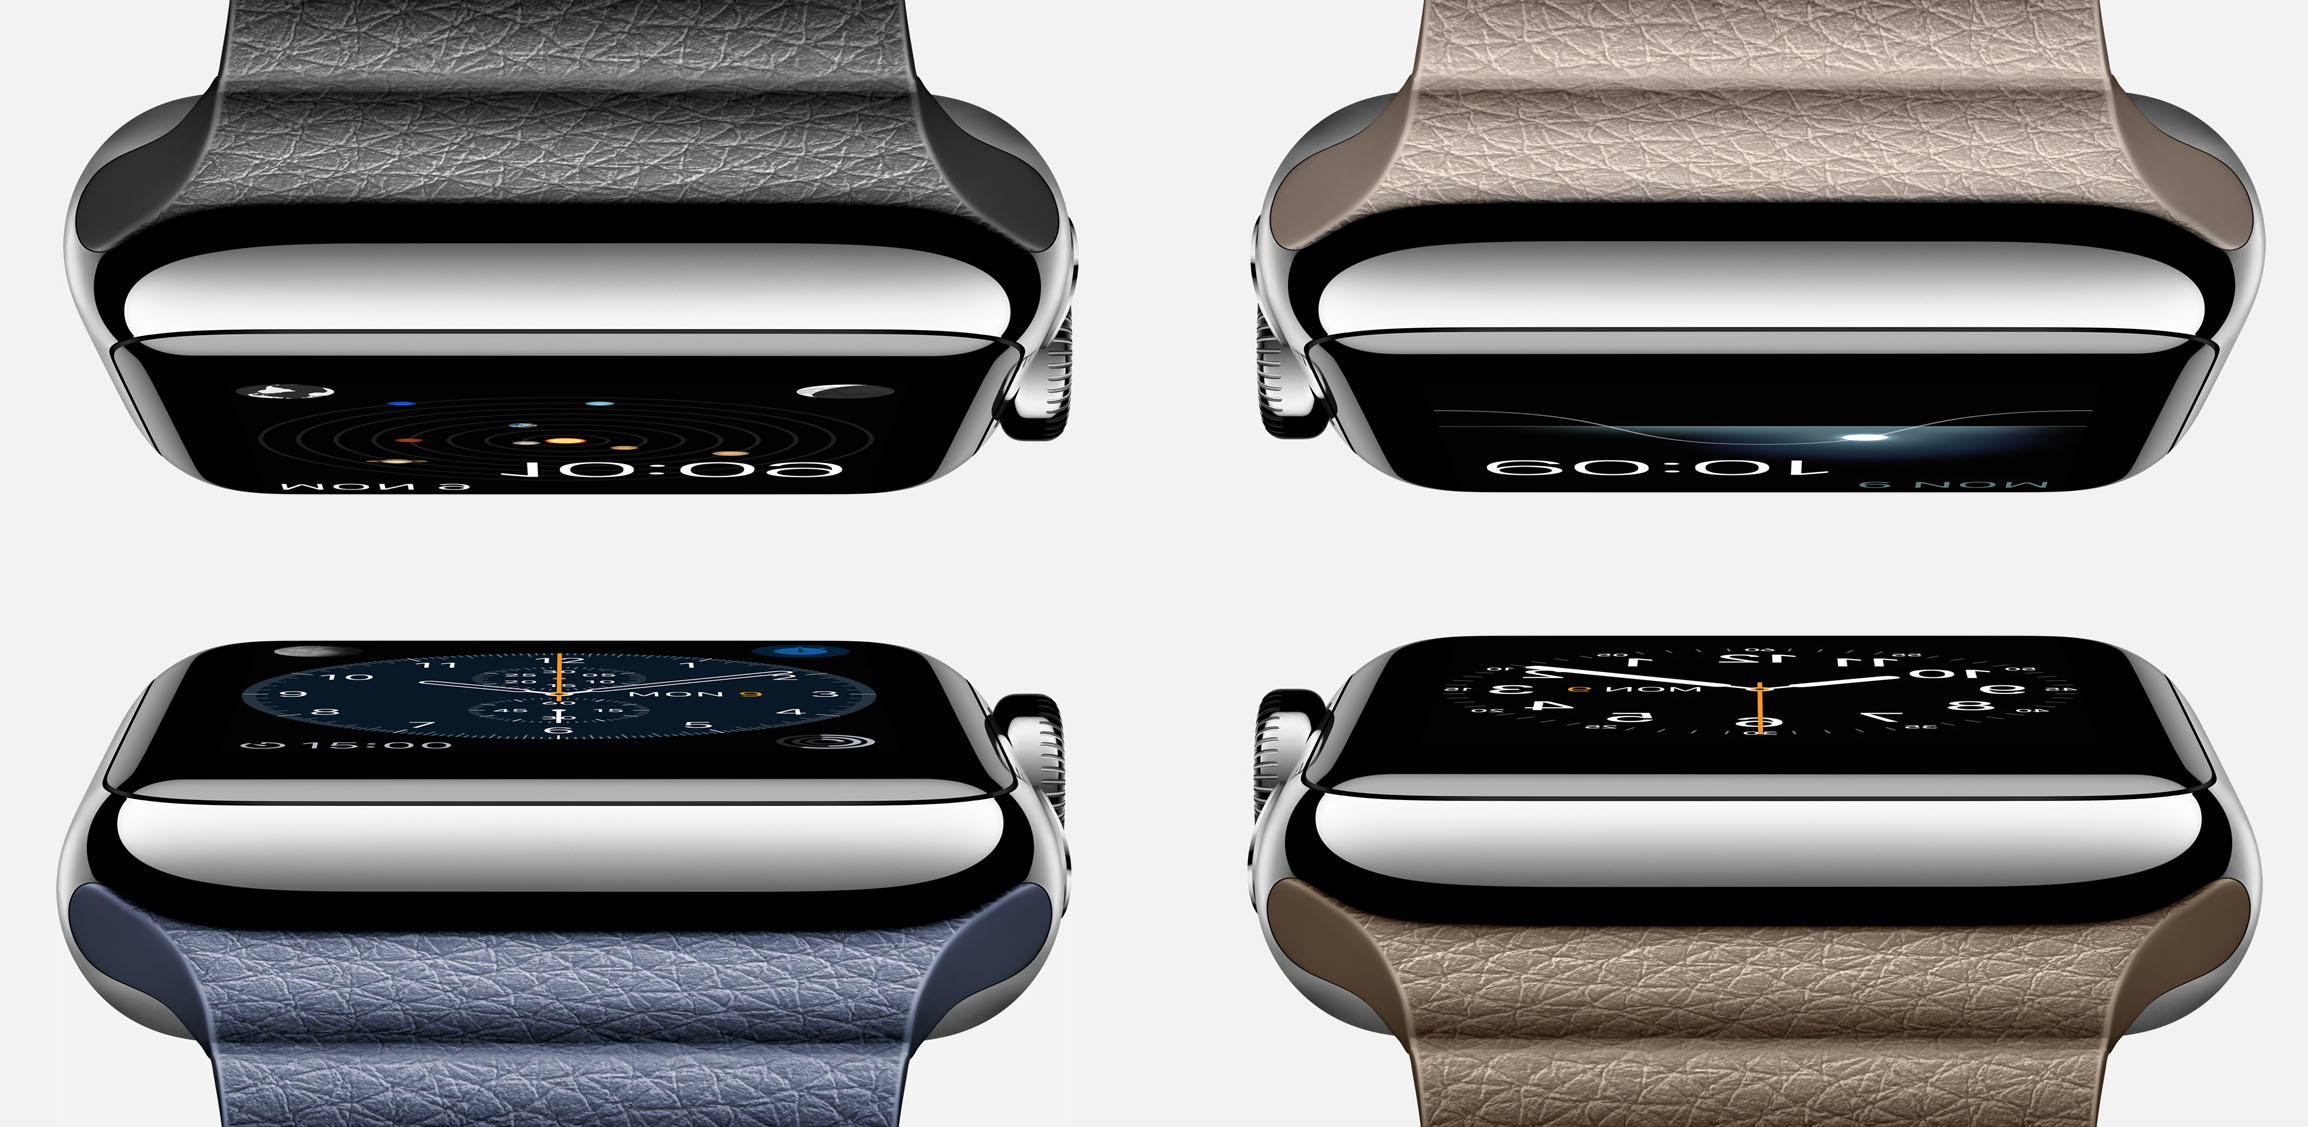 Apple Watch с кожаным фактурным ремешком